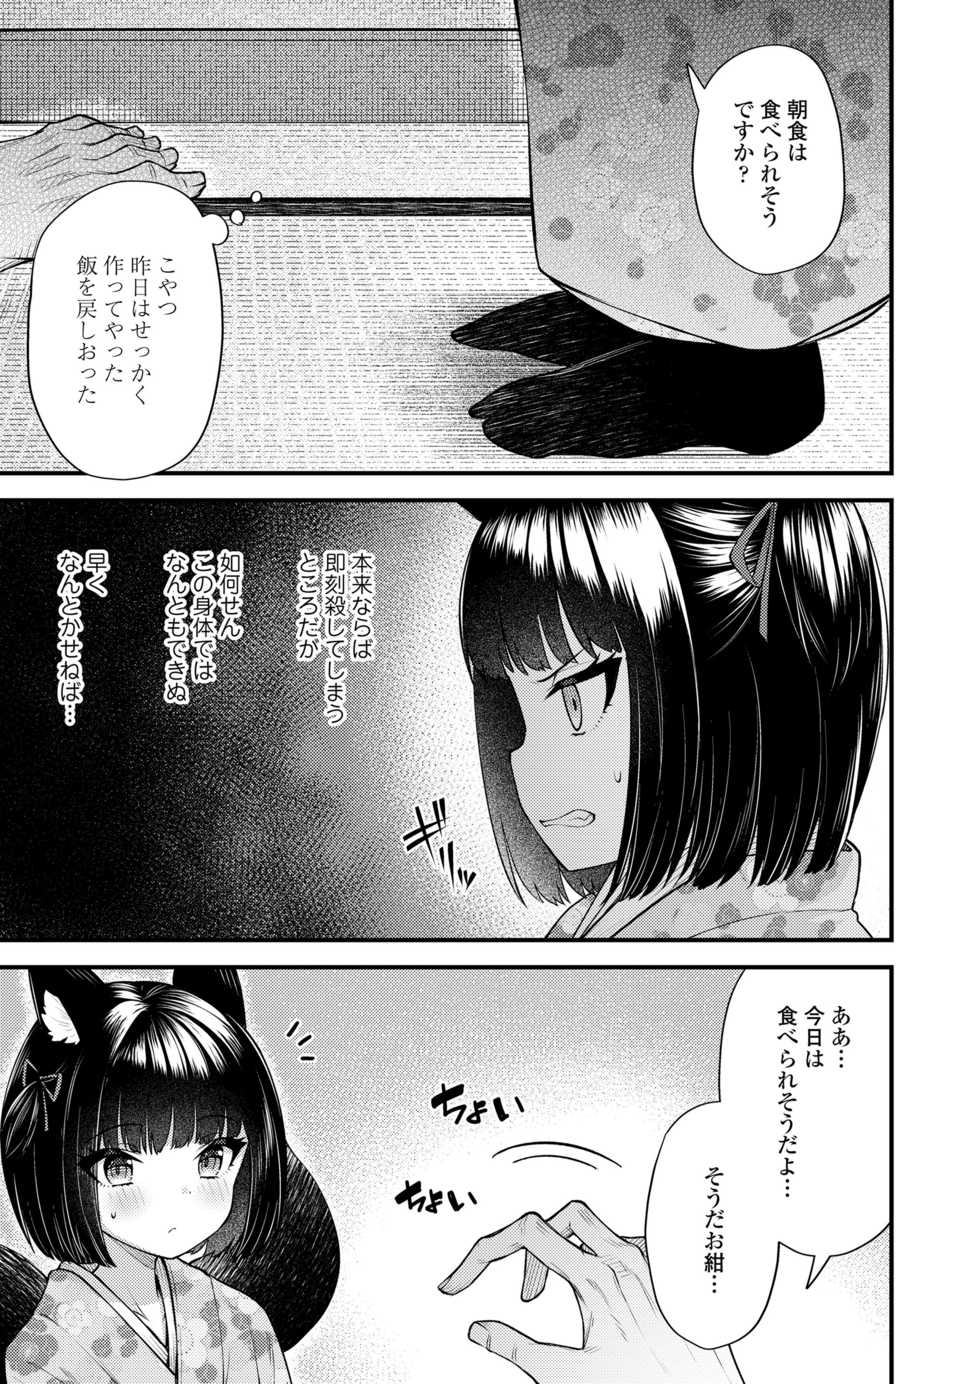 Towako 10 [Digital] - Page 27